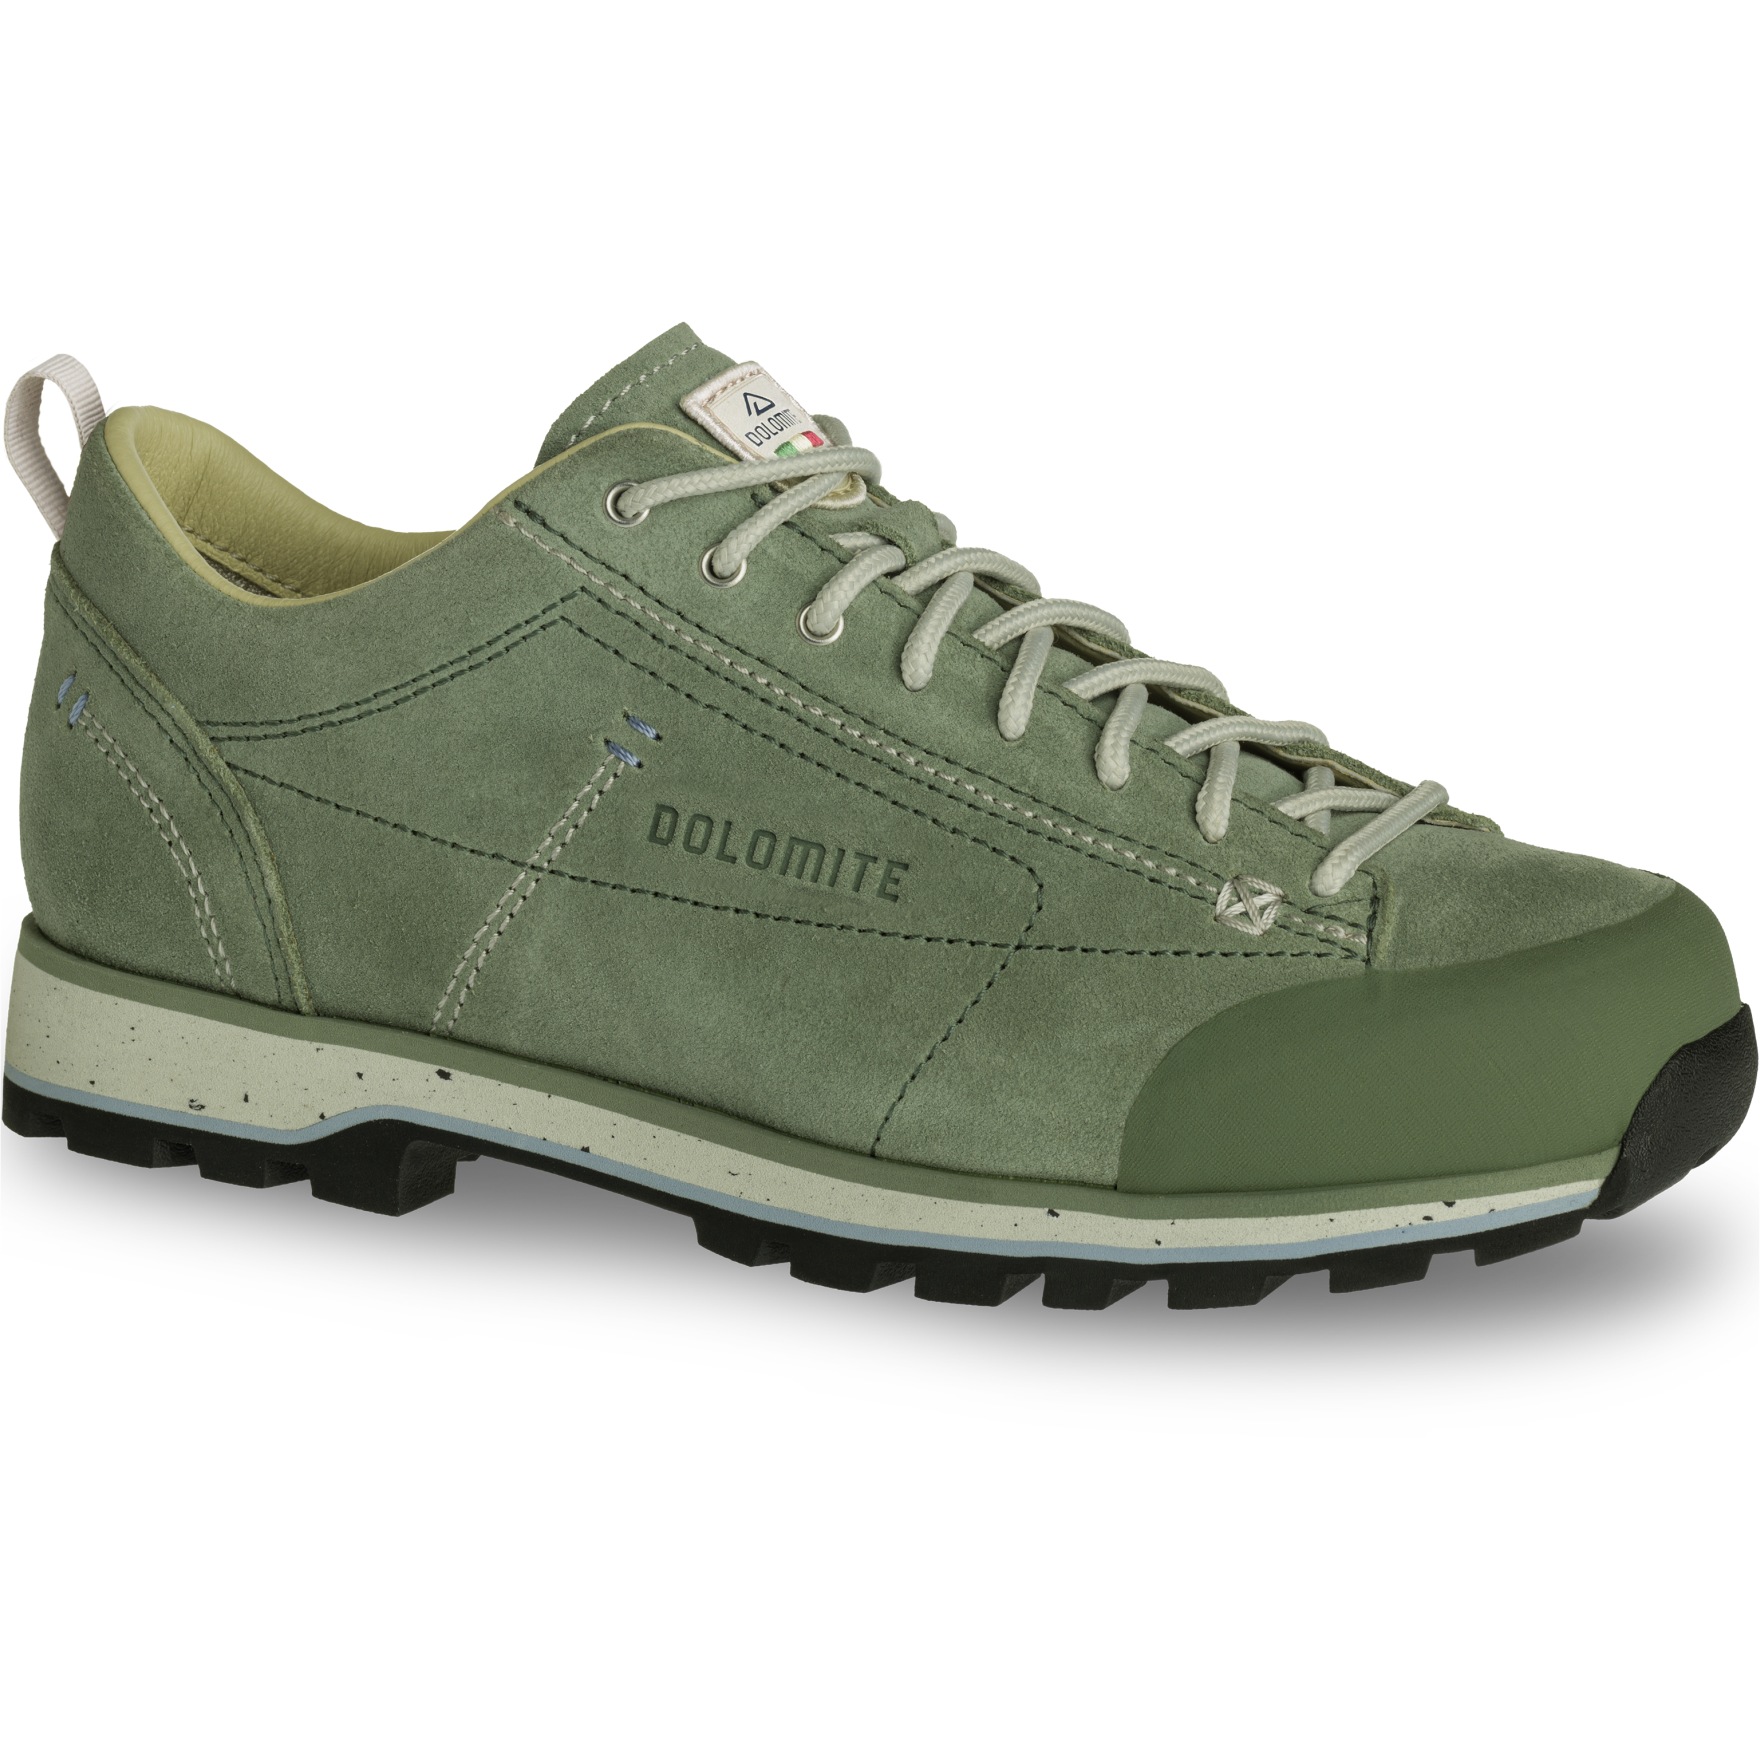 Produktbild von Dolomite 54 Low Evo Schuhe Damen - sage green